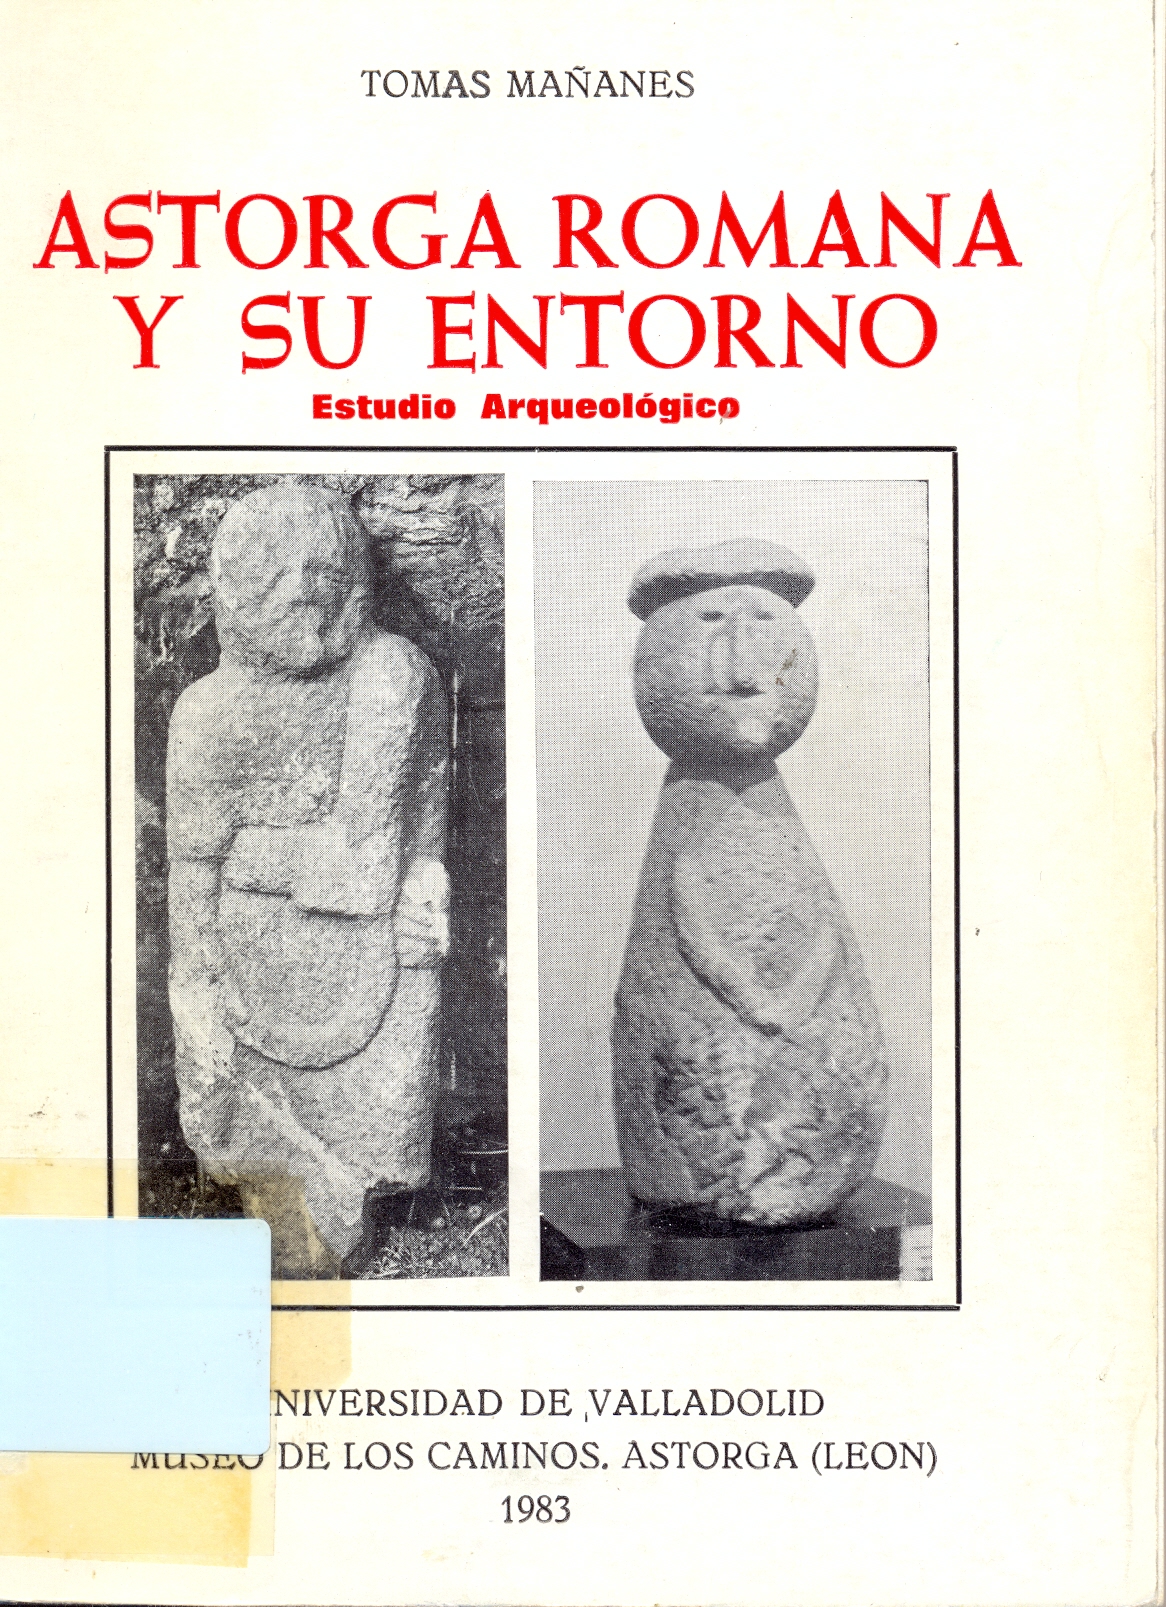 Imagen de portada del libro Astorga romana y su entorno